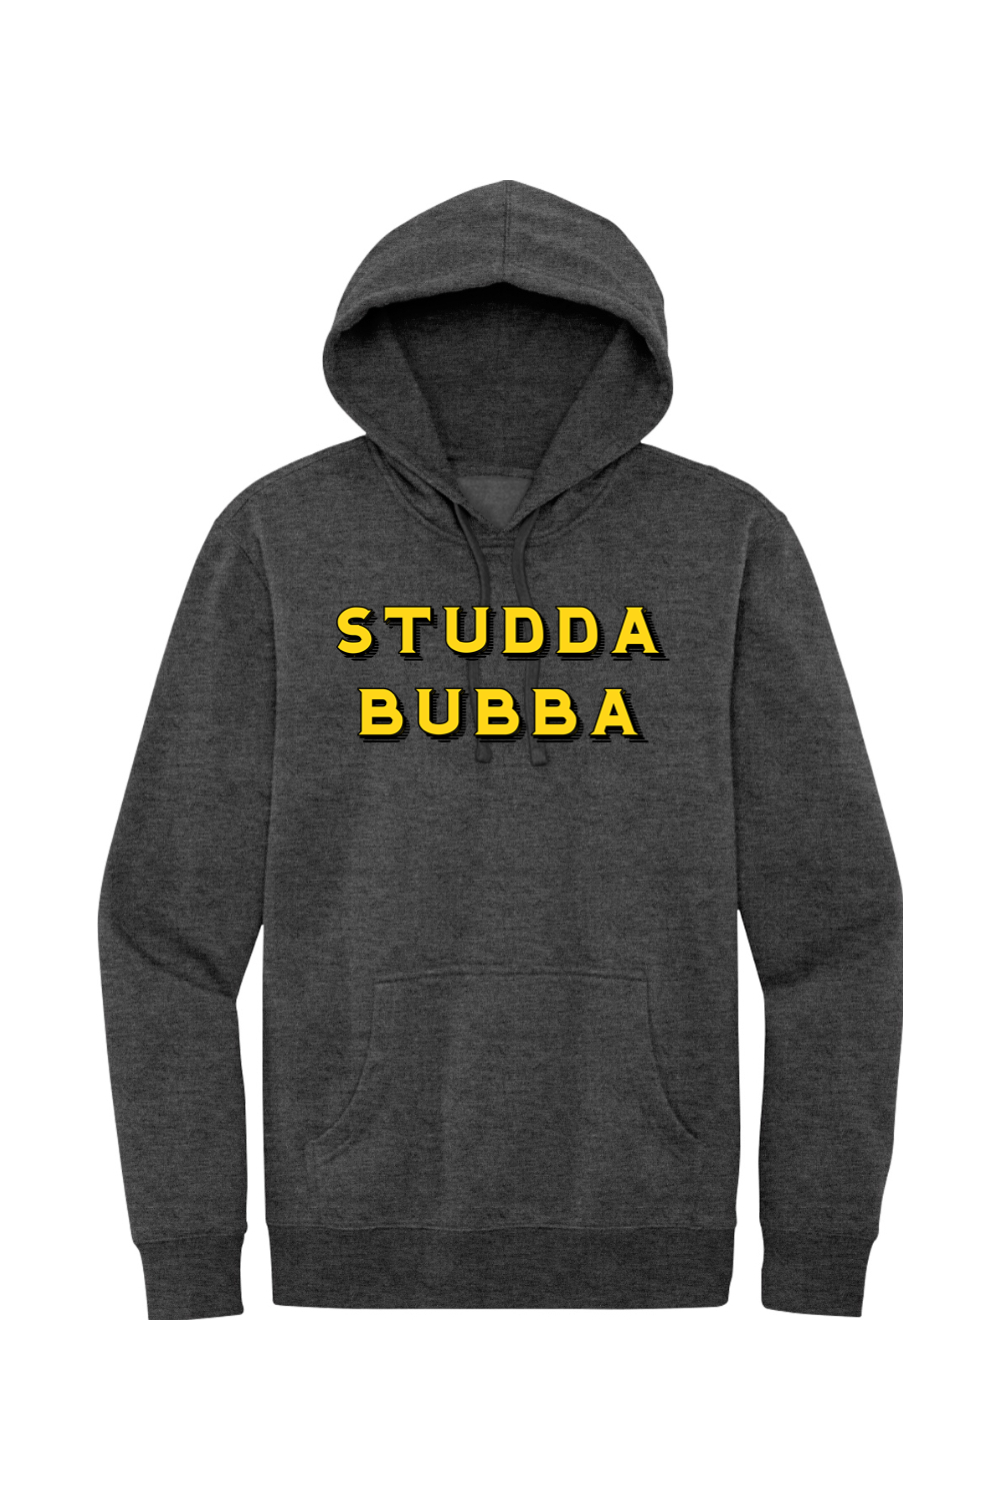 Studda Bubba - Fleece Hoodie - Yinzylvania